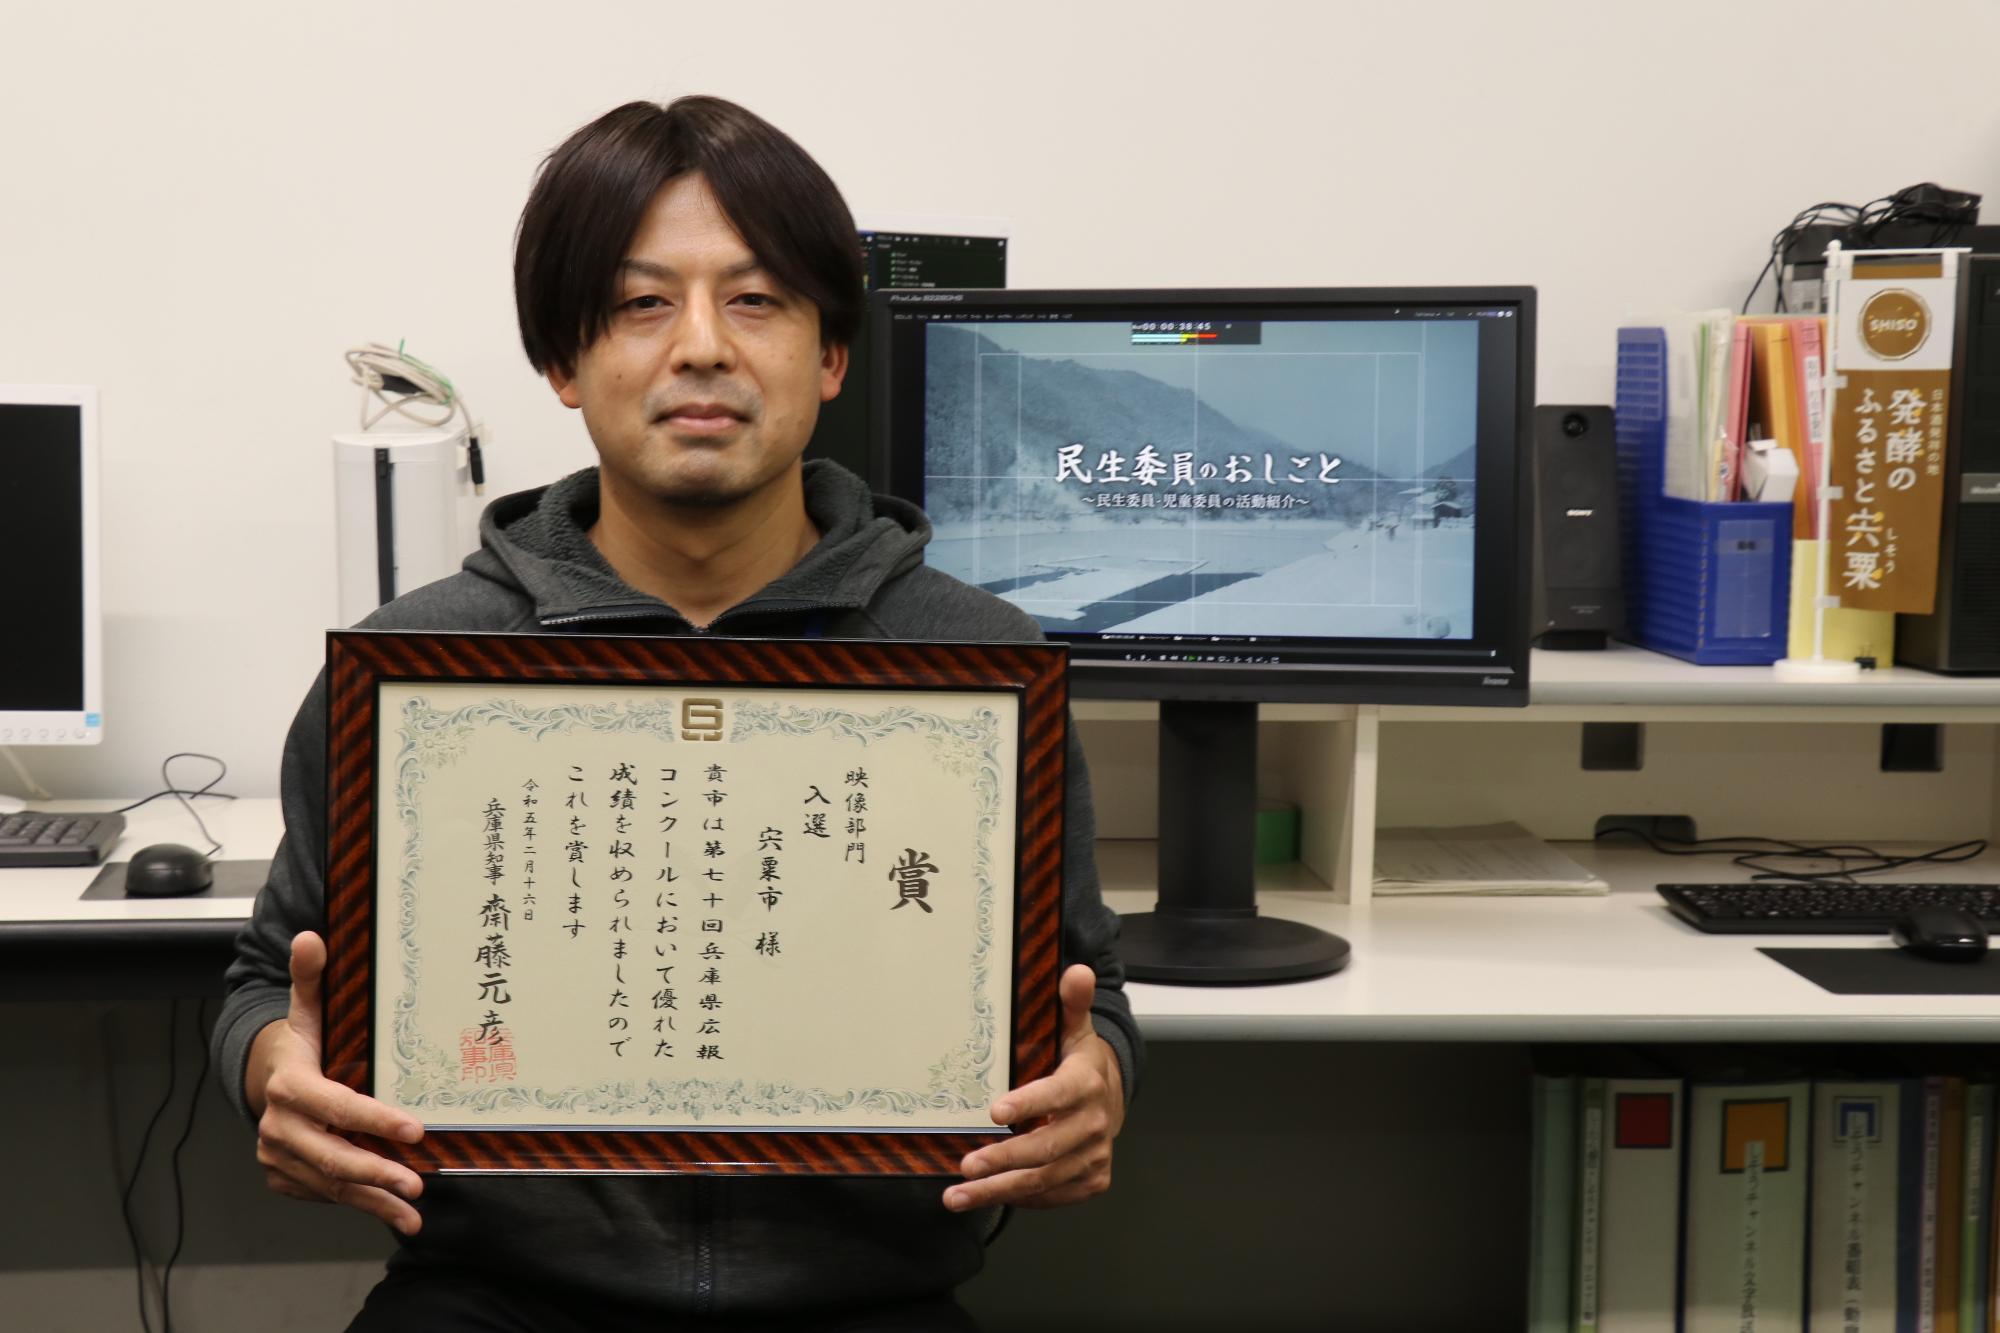 兵庫県広報コンクールで入選した番組を制作した山内さんが賞状を手に笑顔を見せている写真